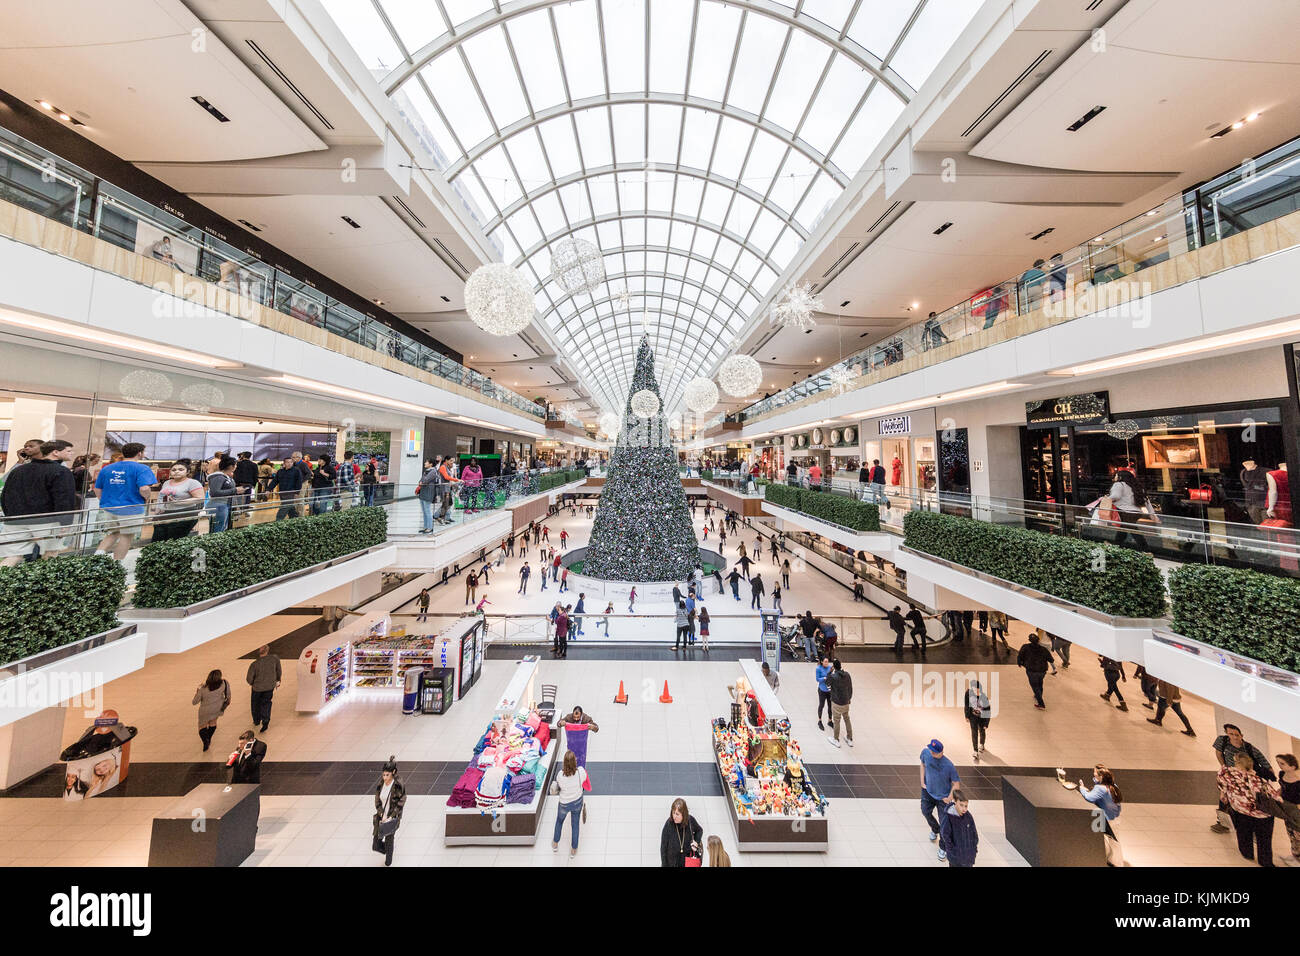 Gente occupata a vacanze di Natale lo shopping nel centro commerciale Galleria, gigantesco albero di natale e la pista di pattinaggio sul pattino visibile in distanza Foto Stock